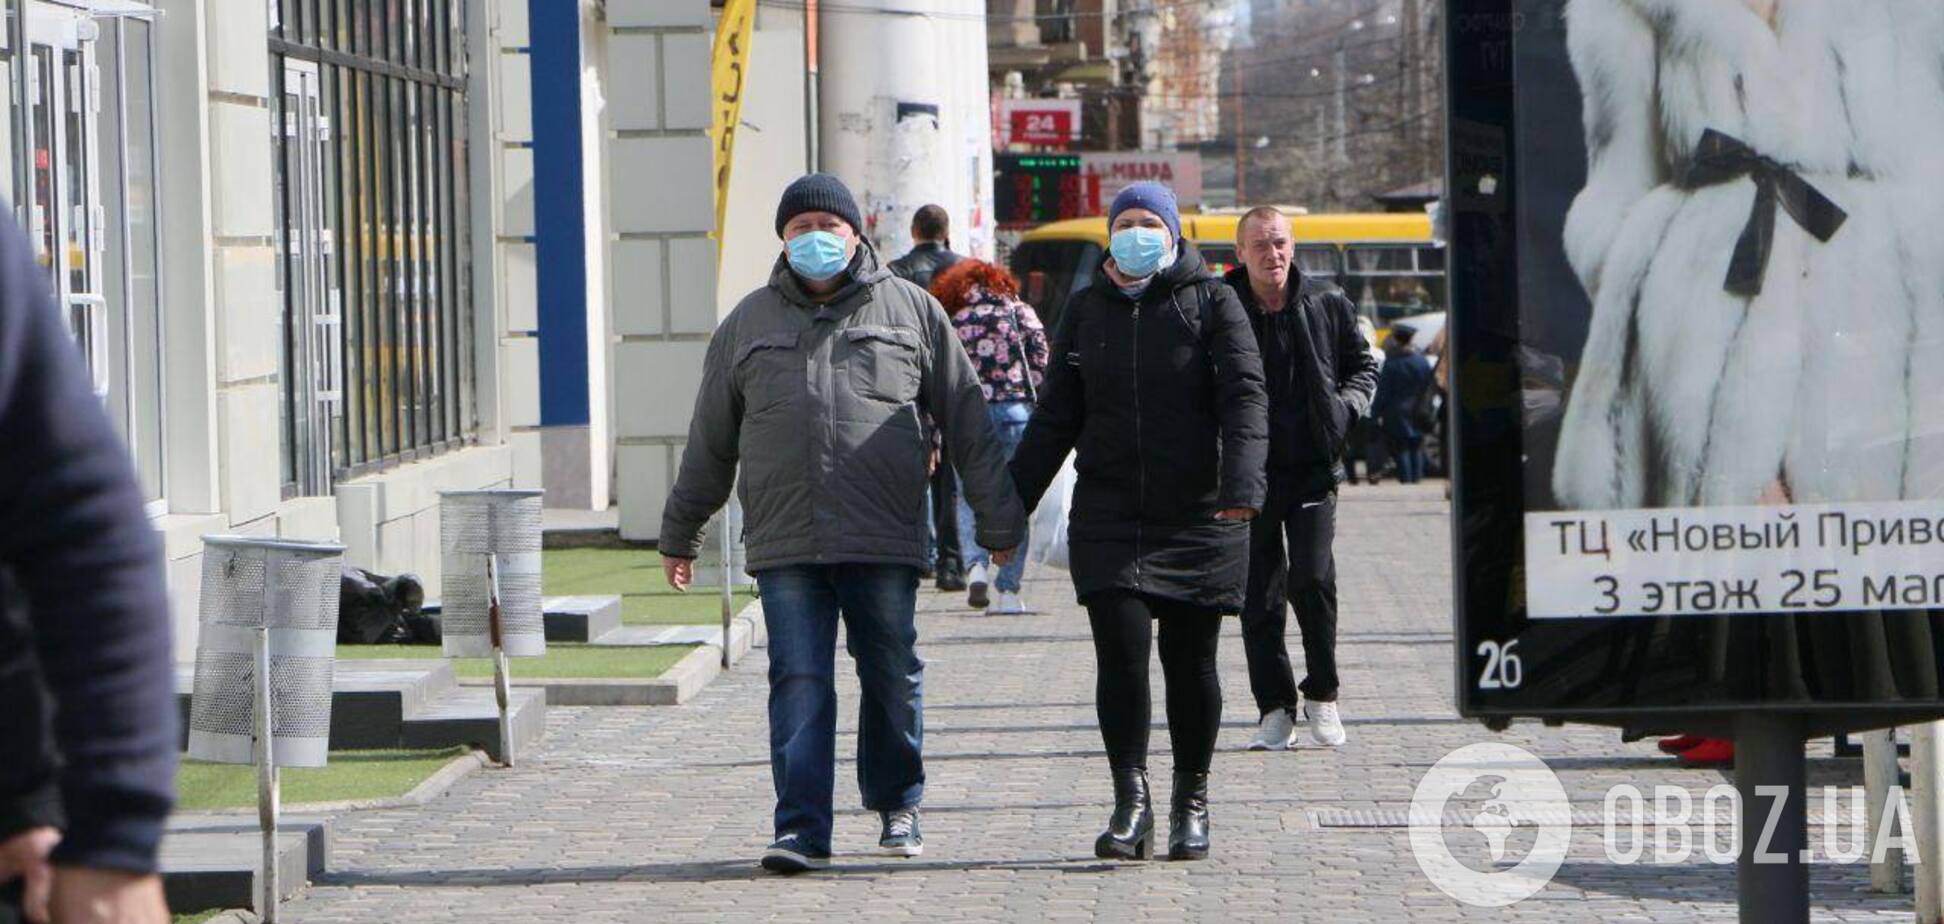  В Одессе ввели дополнительные меры из-за пандемии коронавируса